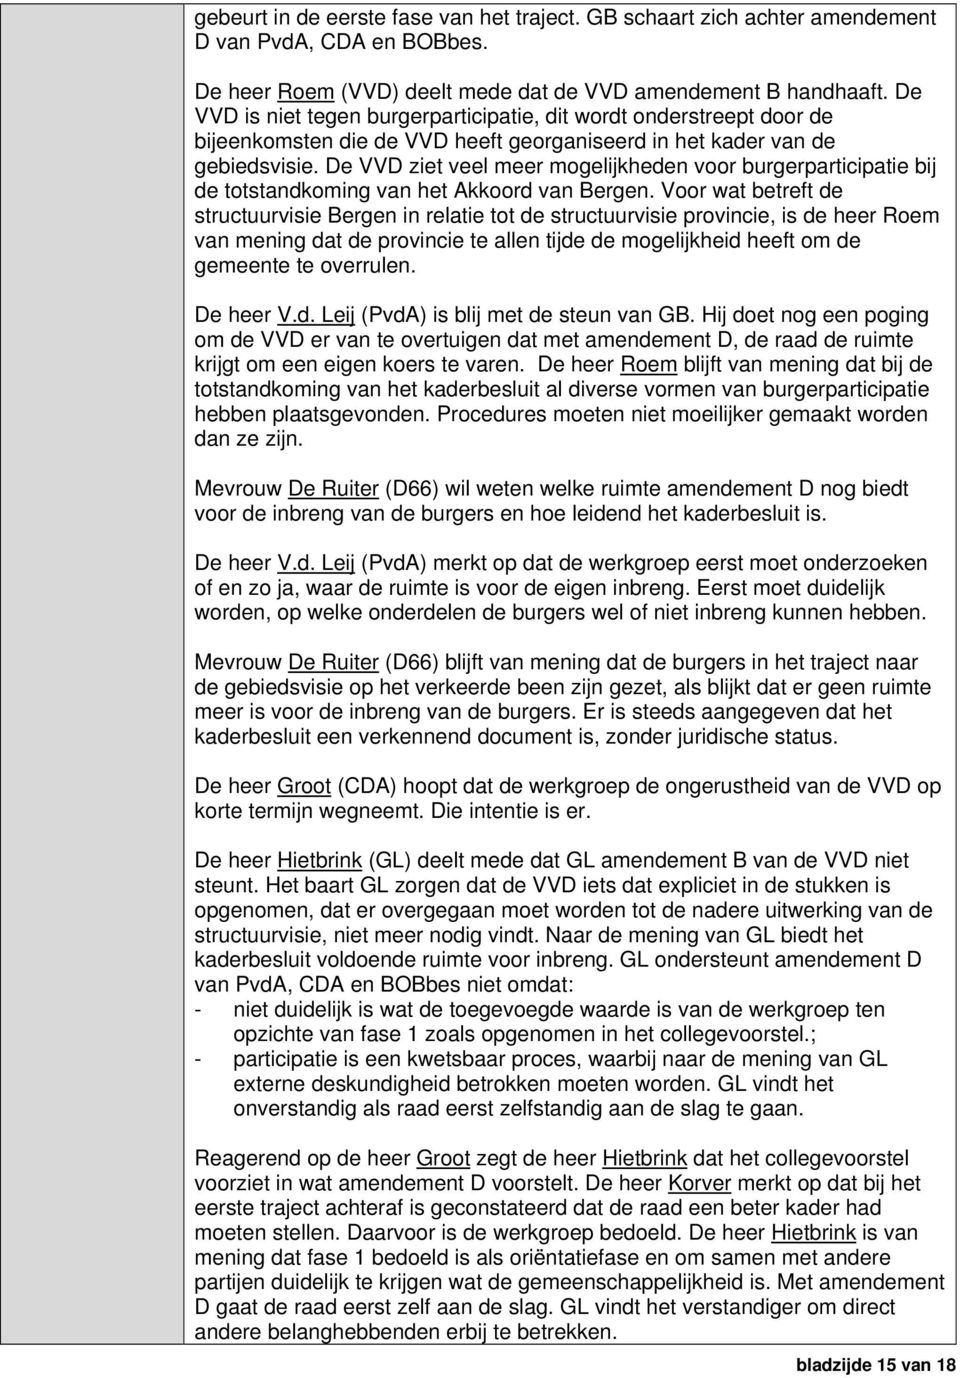 De VVD ziet veel meer mogelijkheden voor burgerparticipatie bij de totstandkoming van het Akkoord van Bergen.